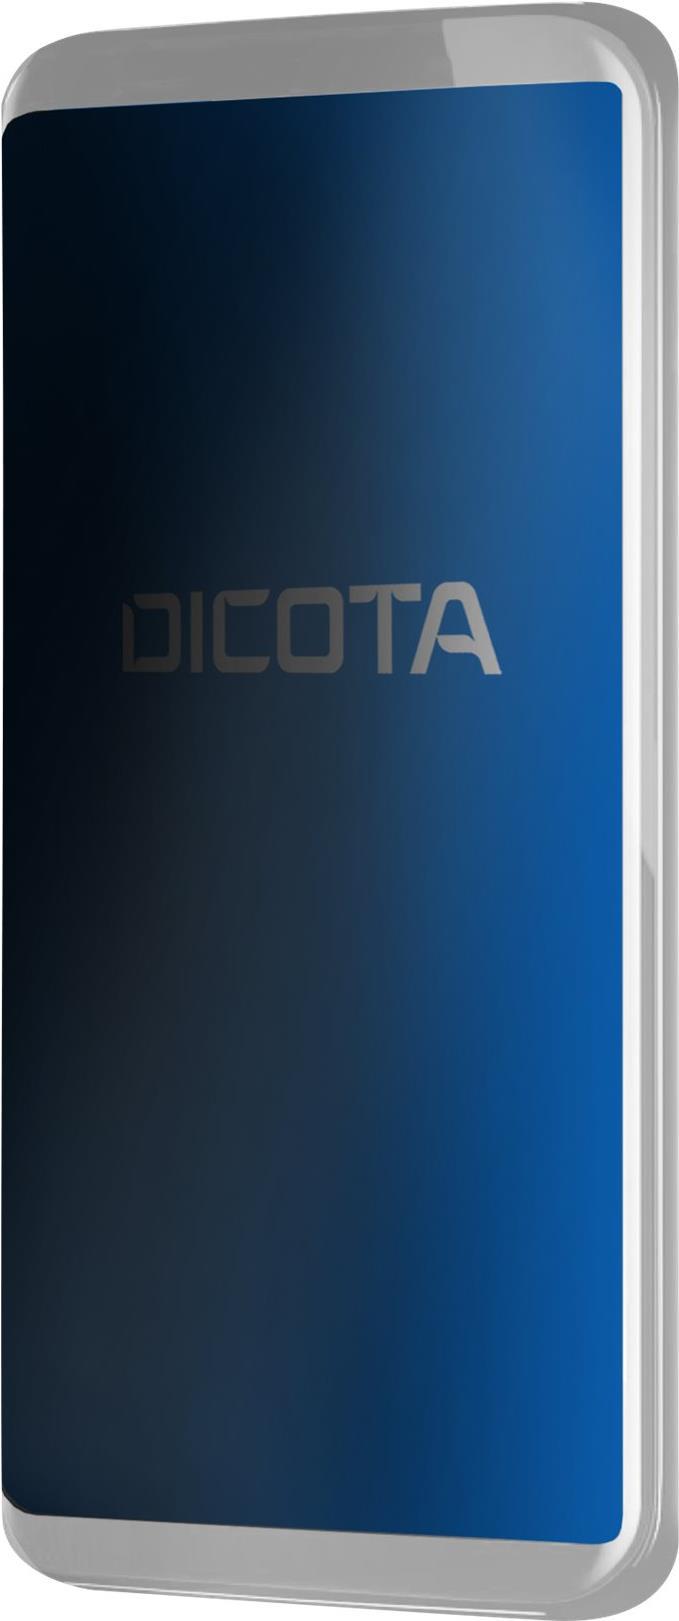 DICOTA – Bildschirmschutz für Handy – Folie – mit Sichtschutzfilter – 4-Wege – Schwarz – für Apple iPhone 13 Pro Max